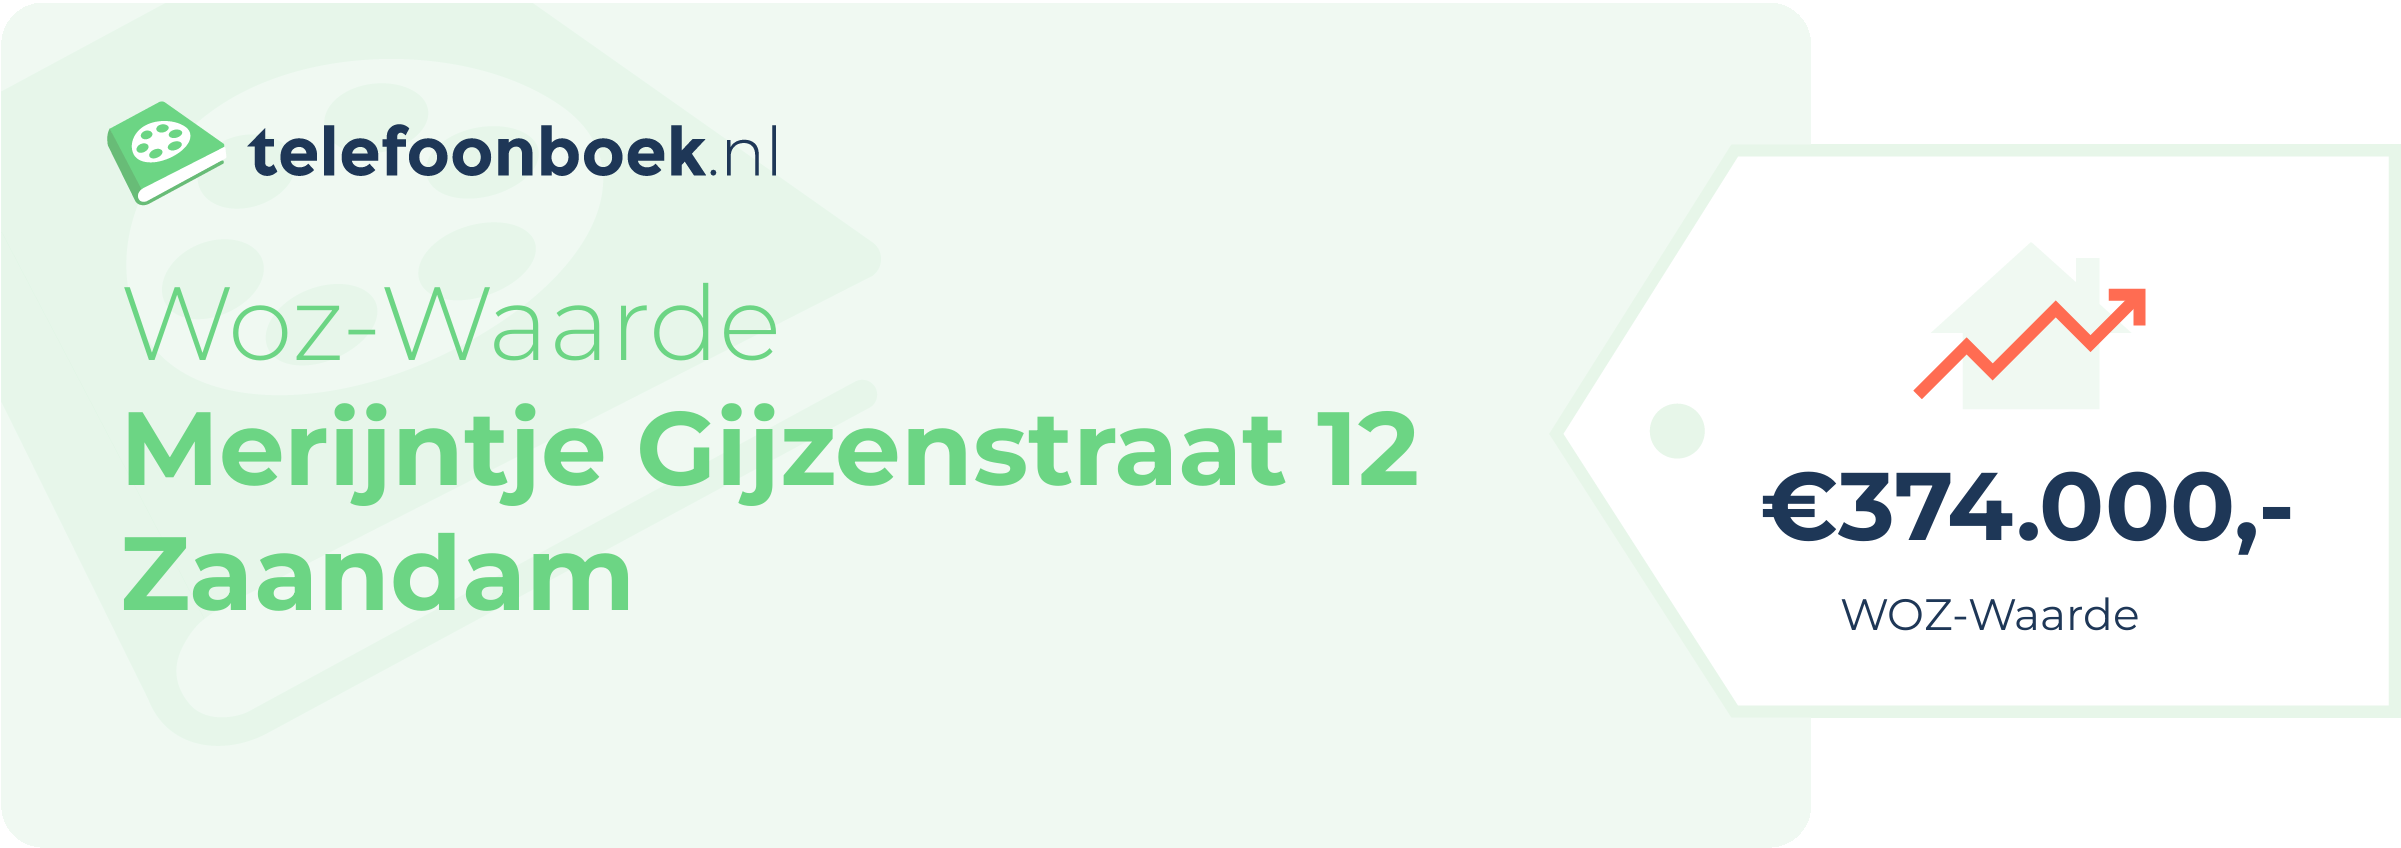 WOZ-waarde Merijntje Gijzenstraat 12 Zaandam